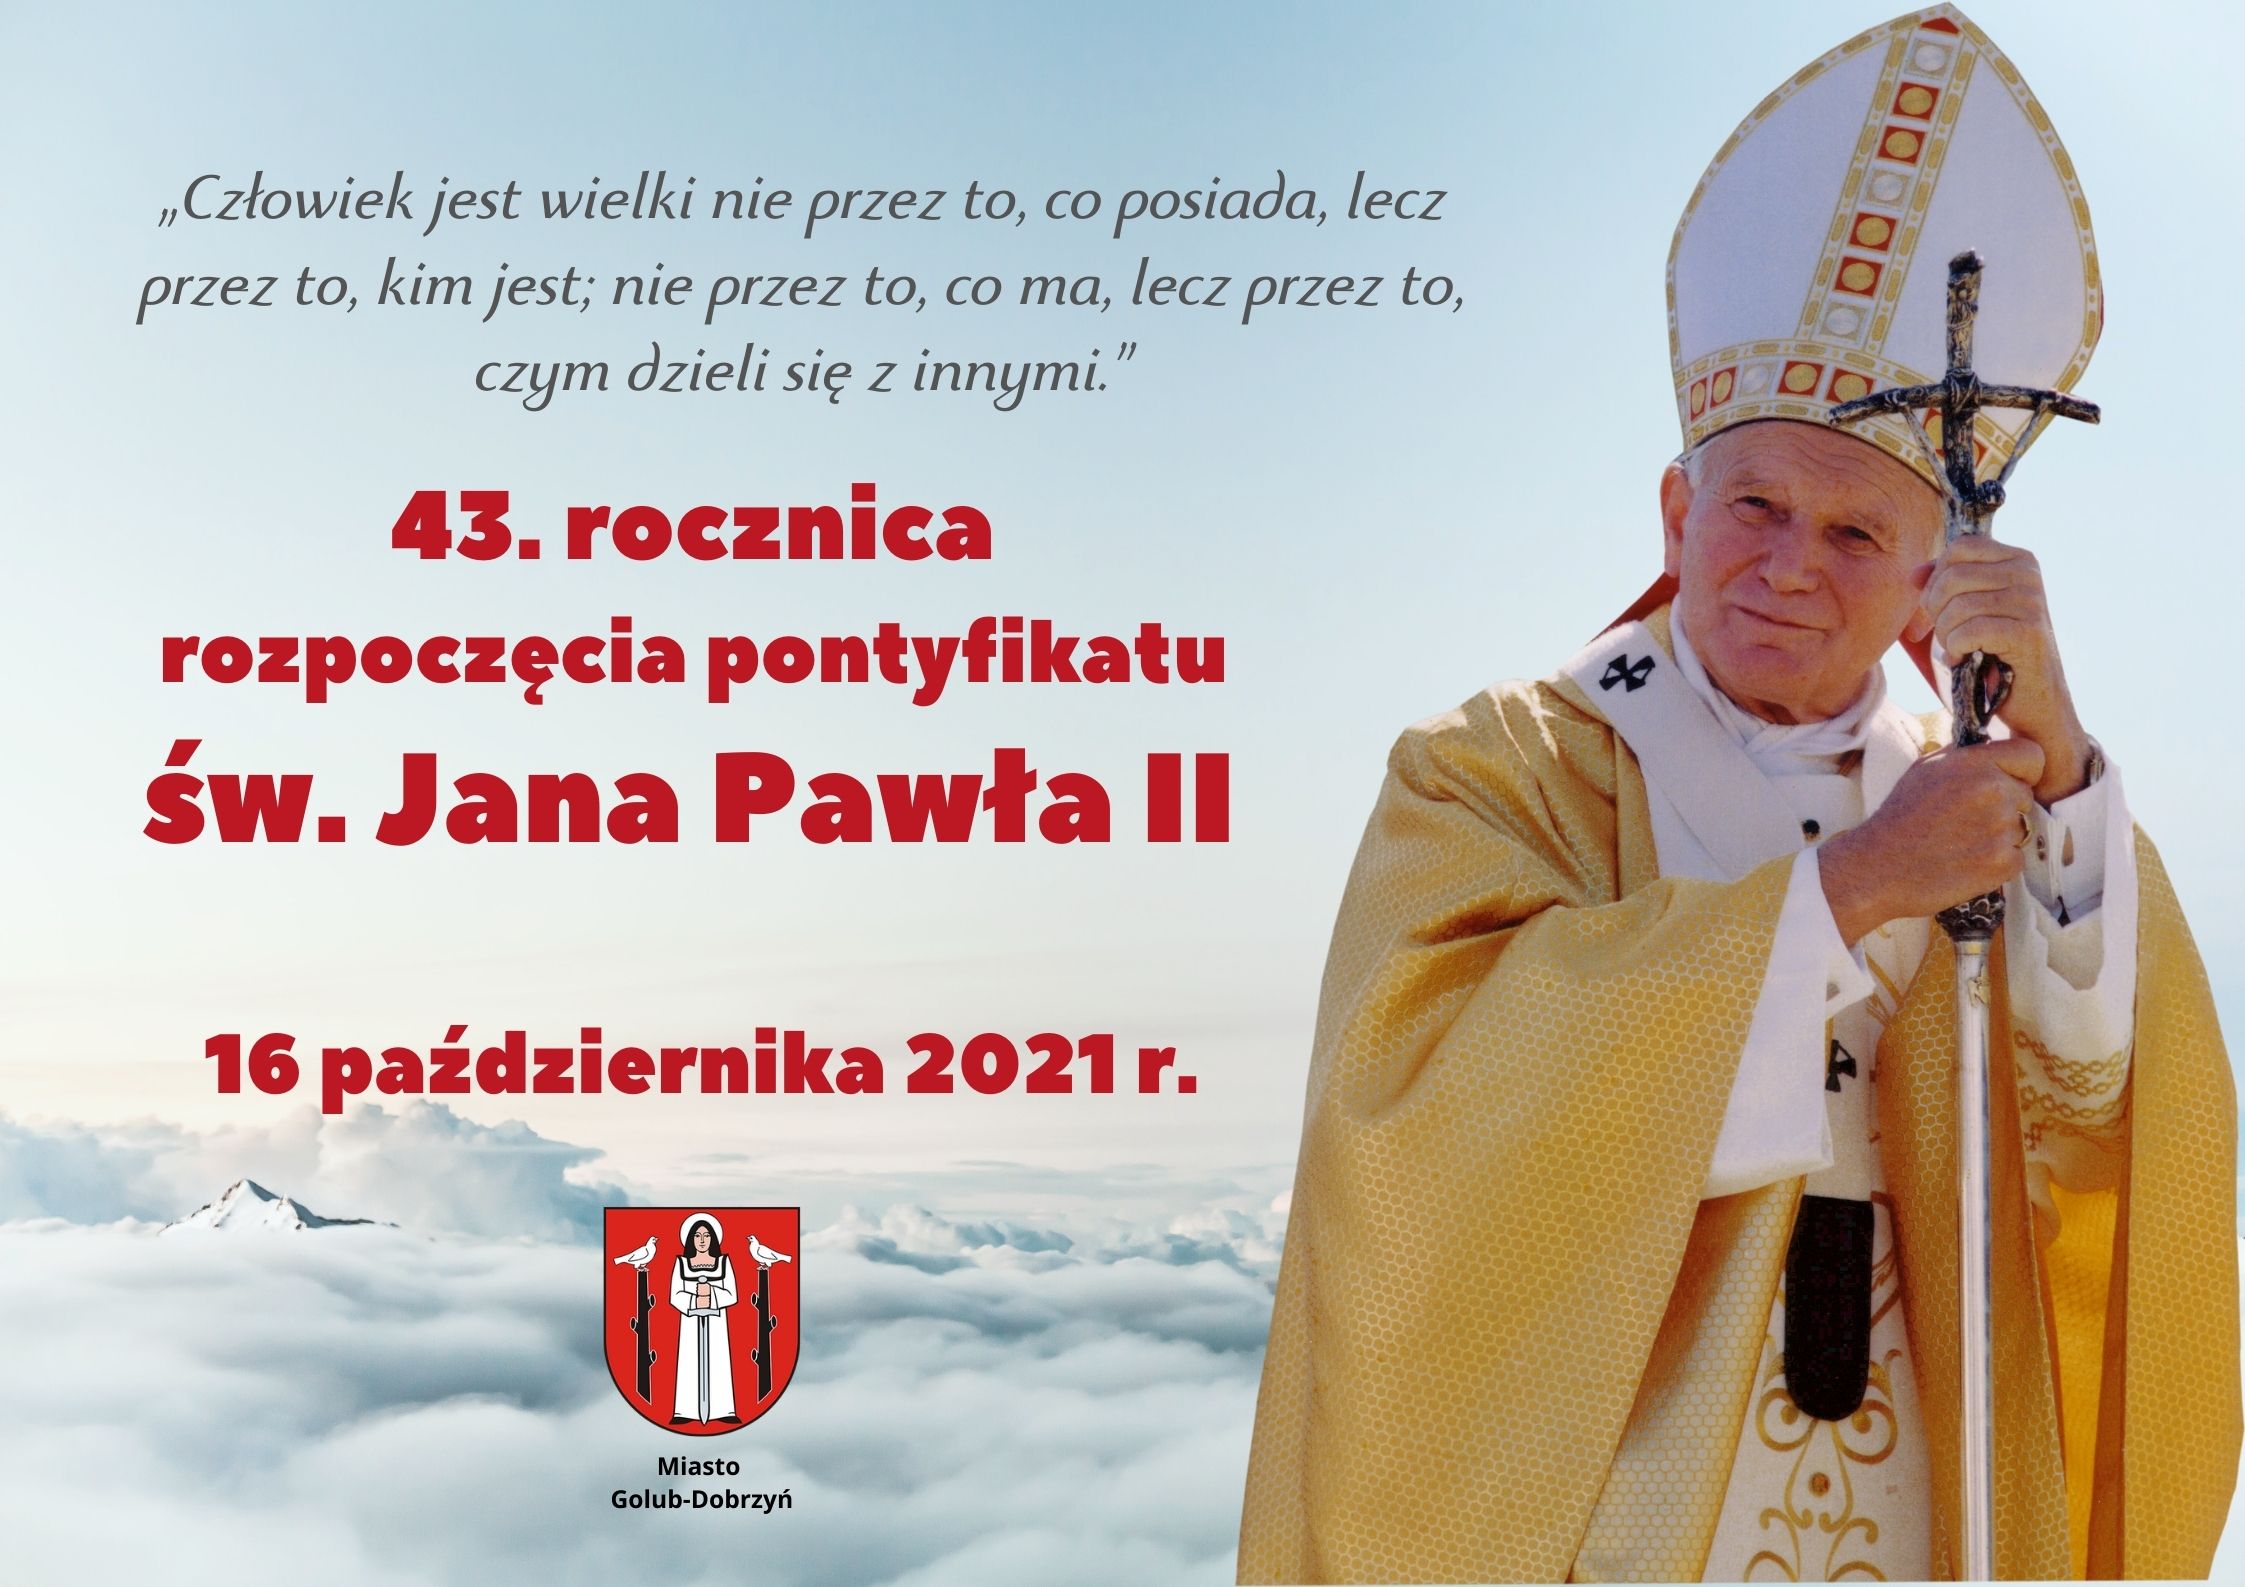 43. rocznica rozpoczęcia pontyfikatu Papieża św. Jana Pawła II